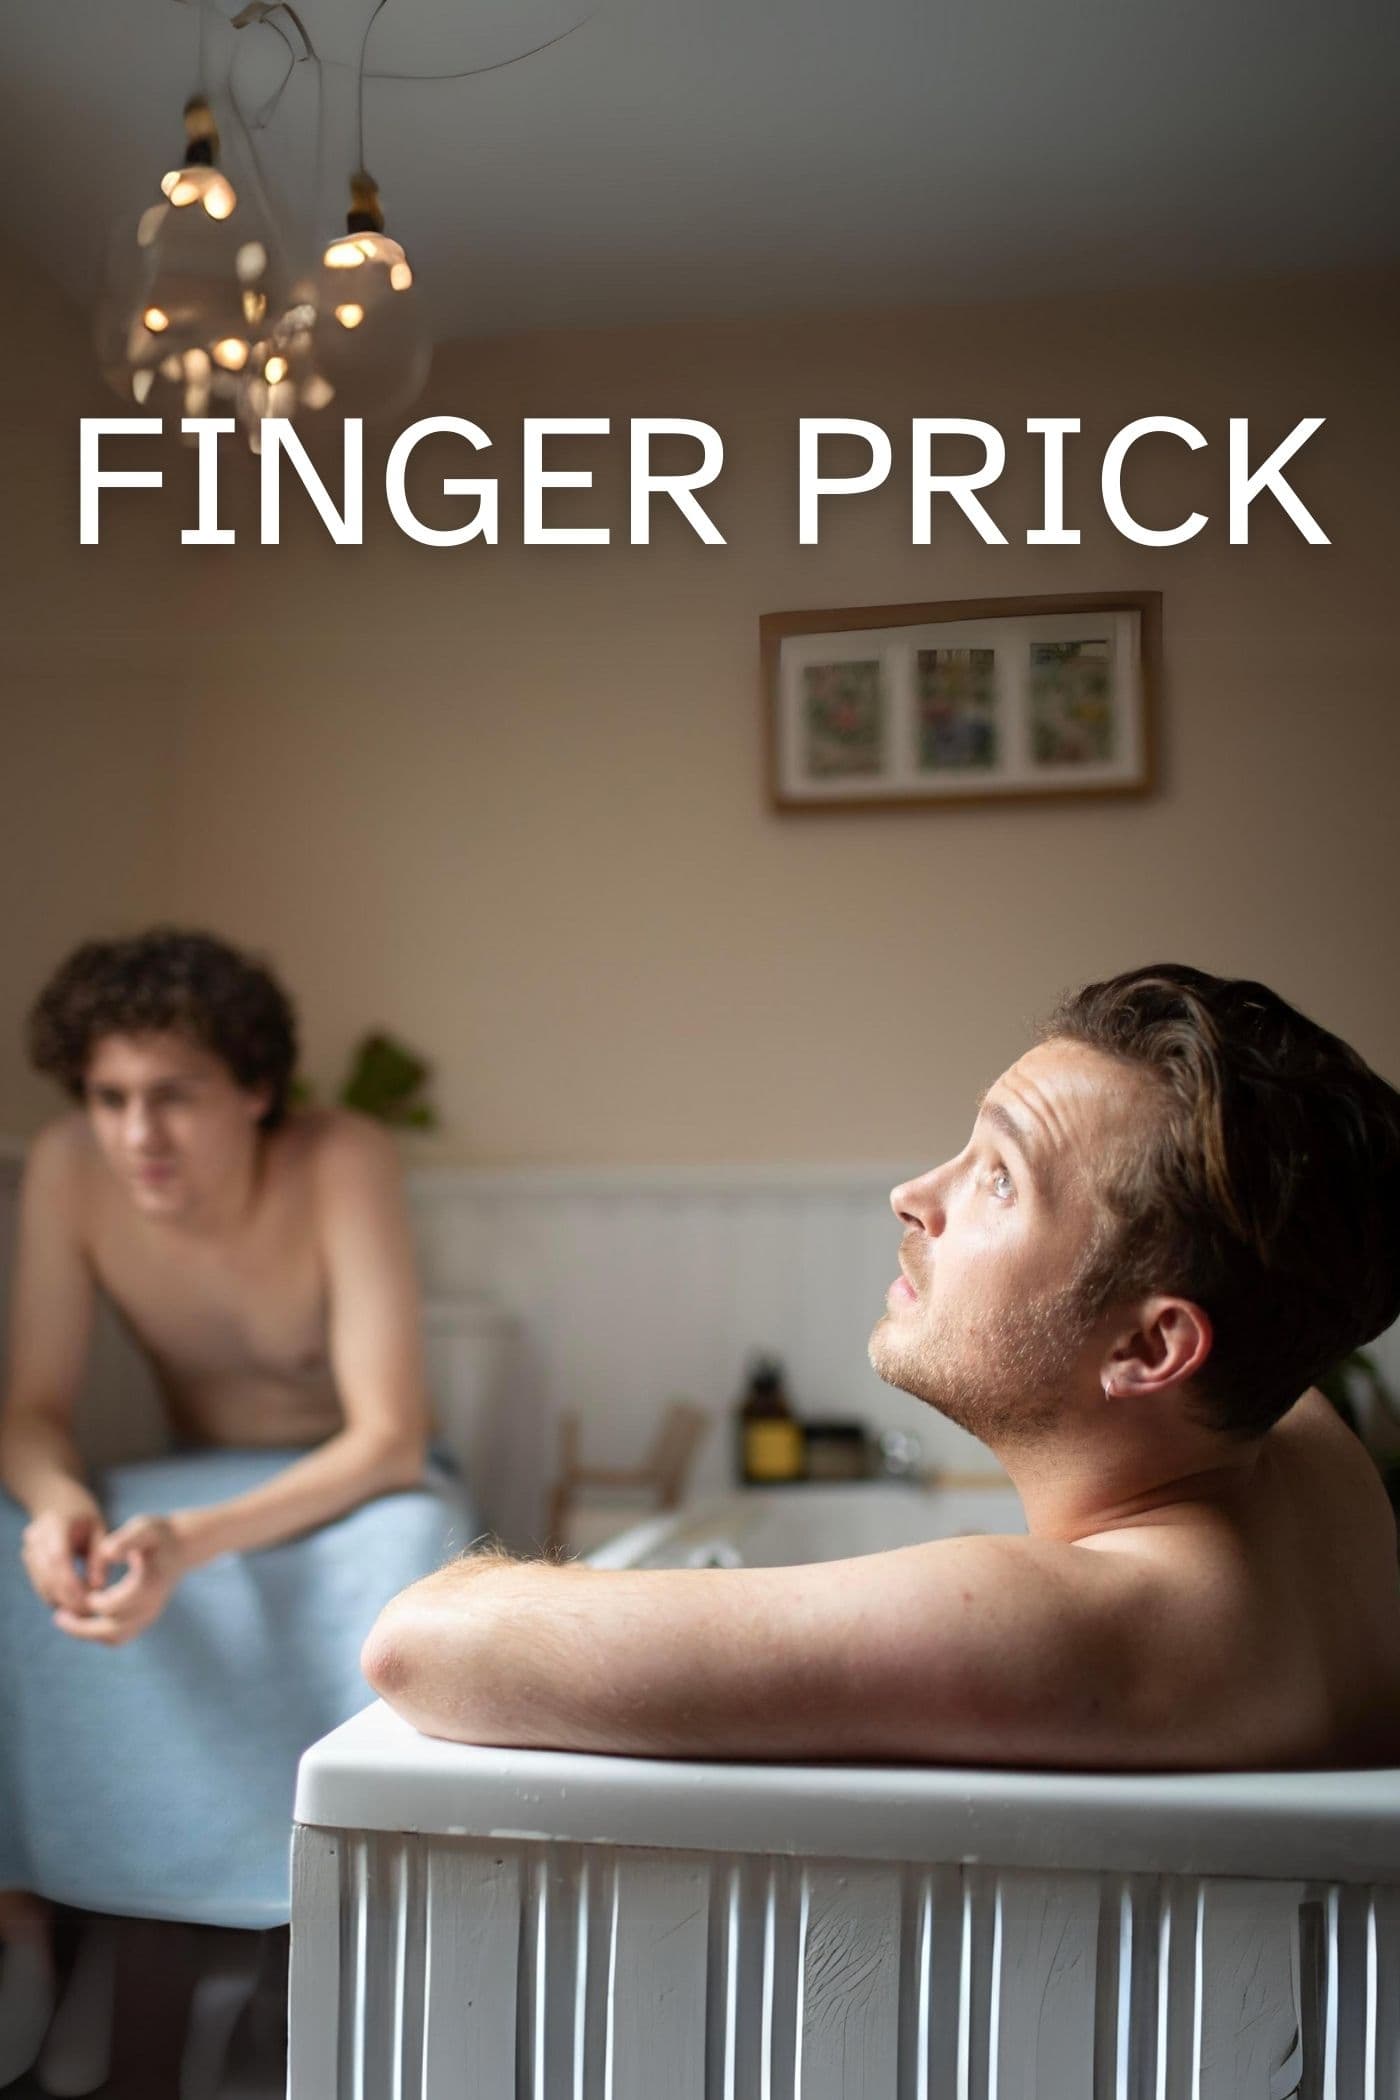 Finger Prick